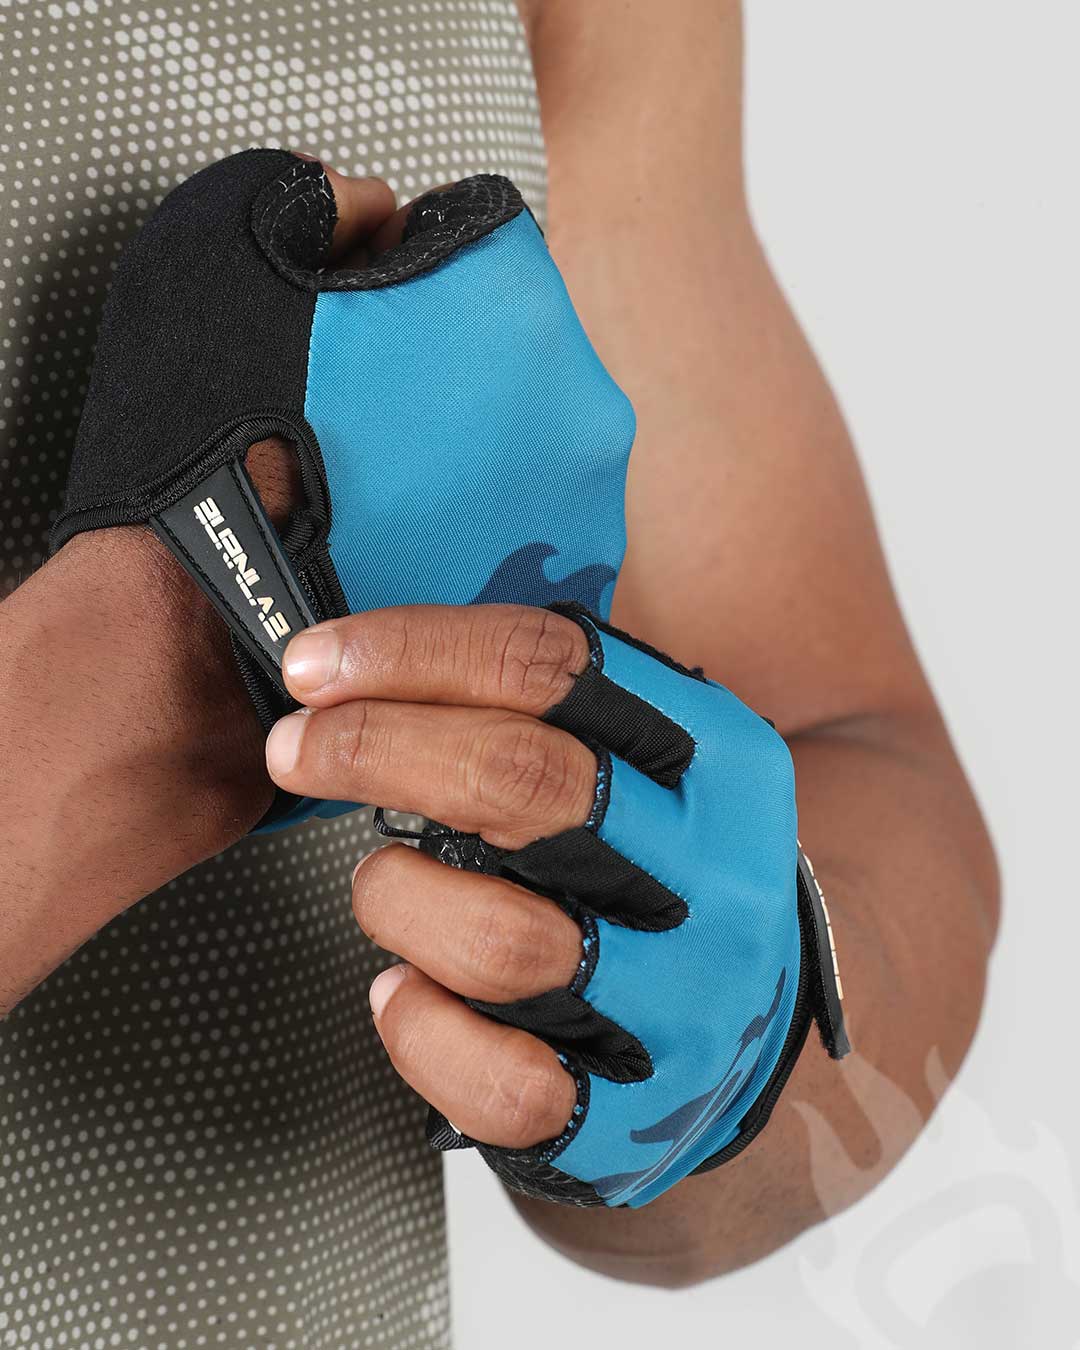 Flex Gym Gloves - Burnlab.Co